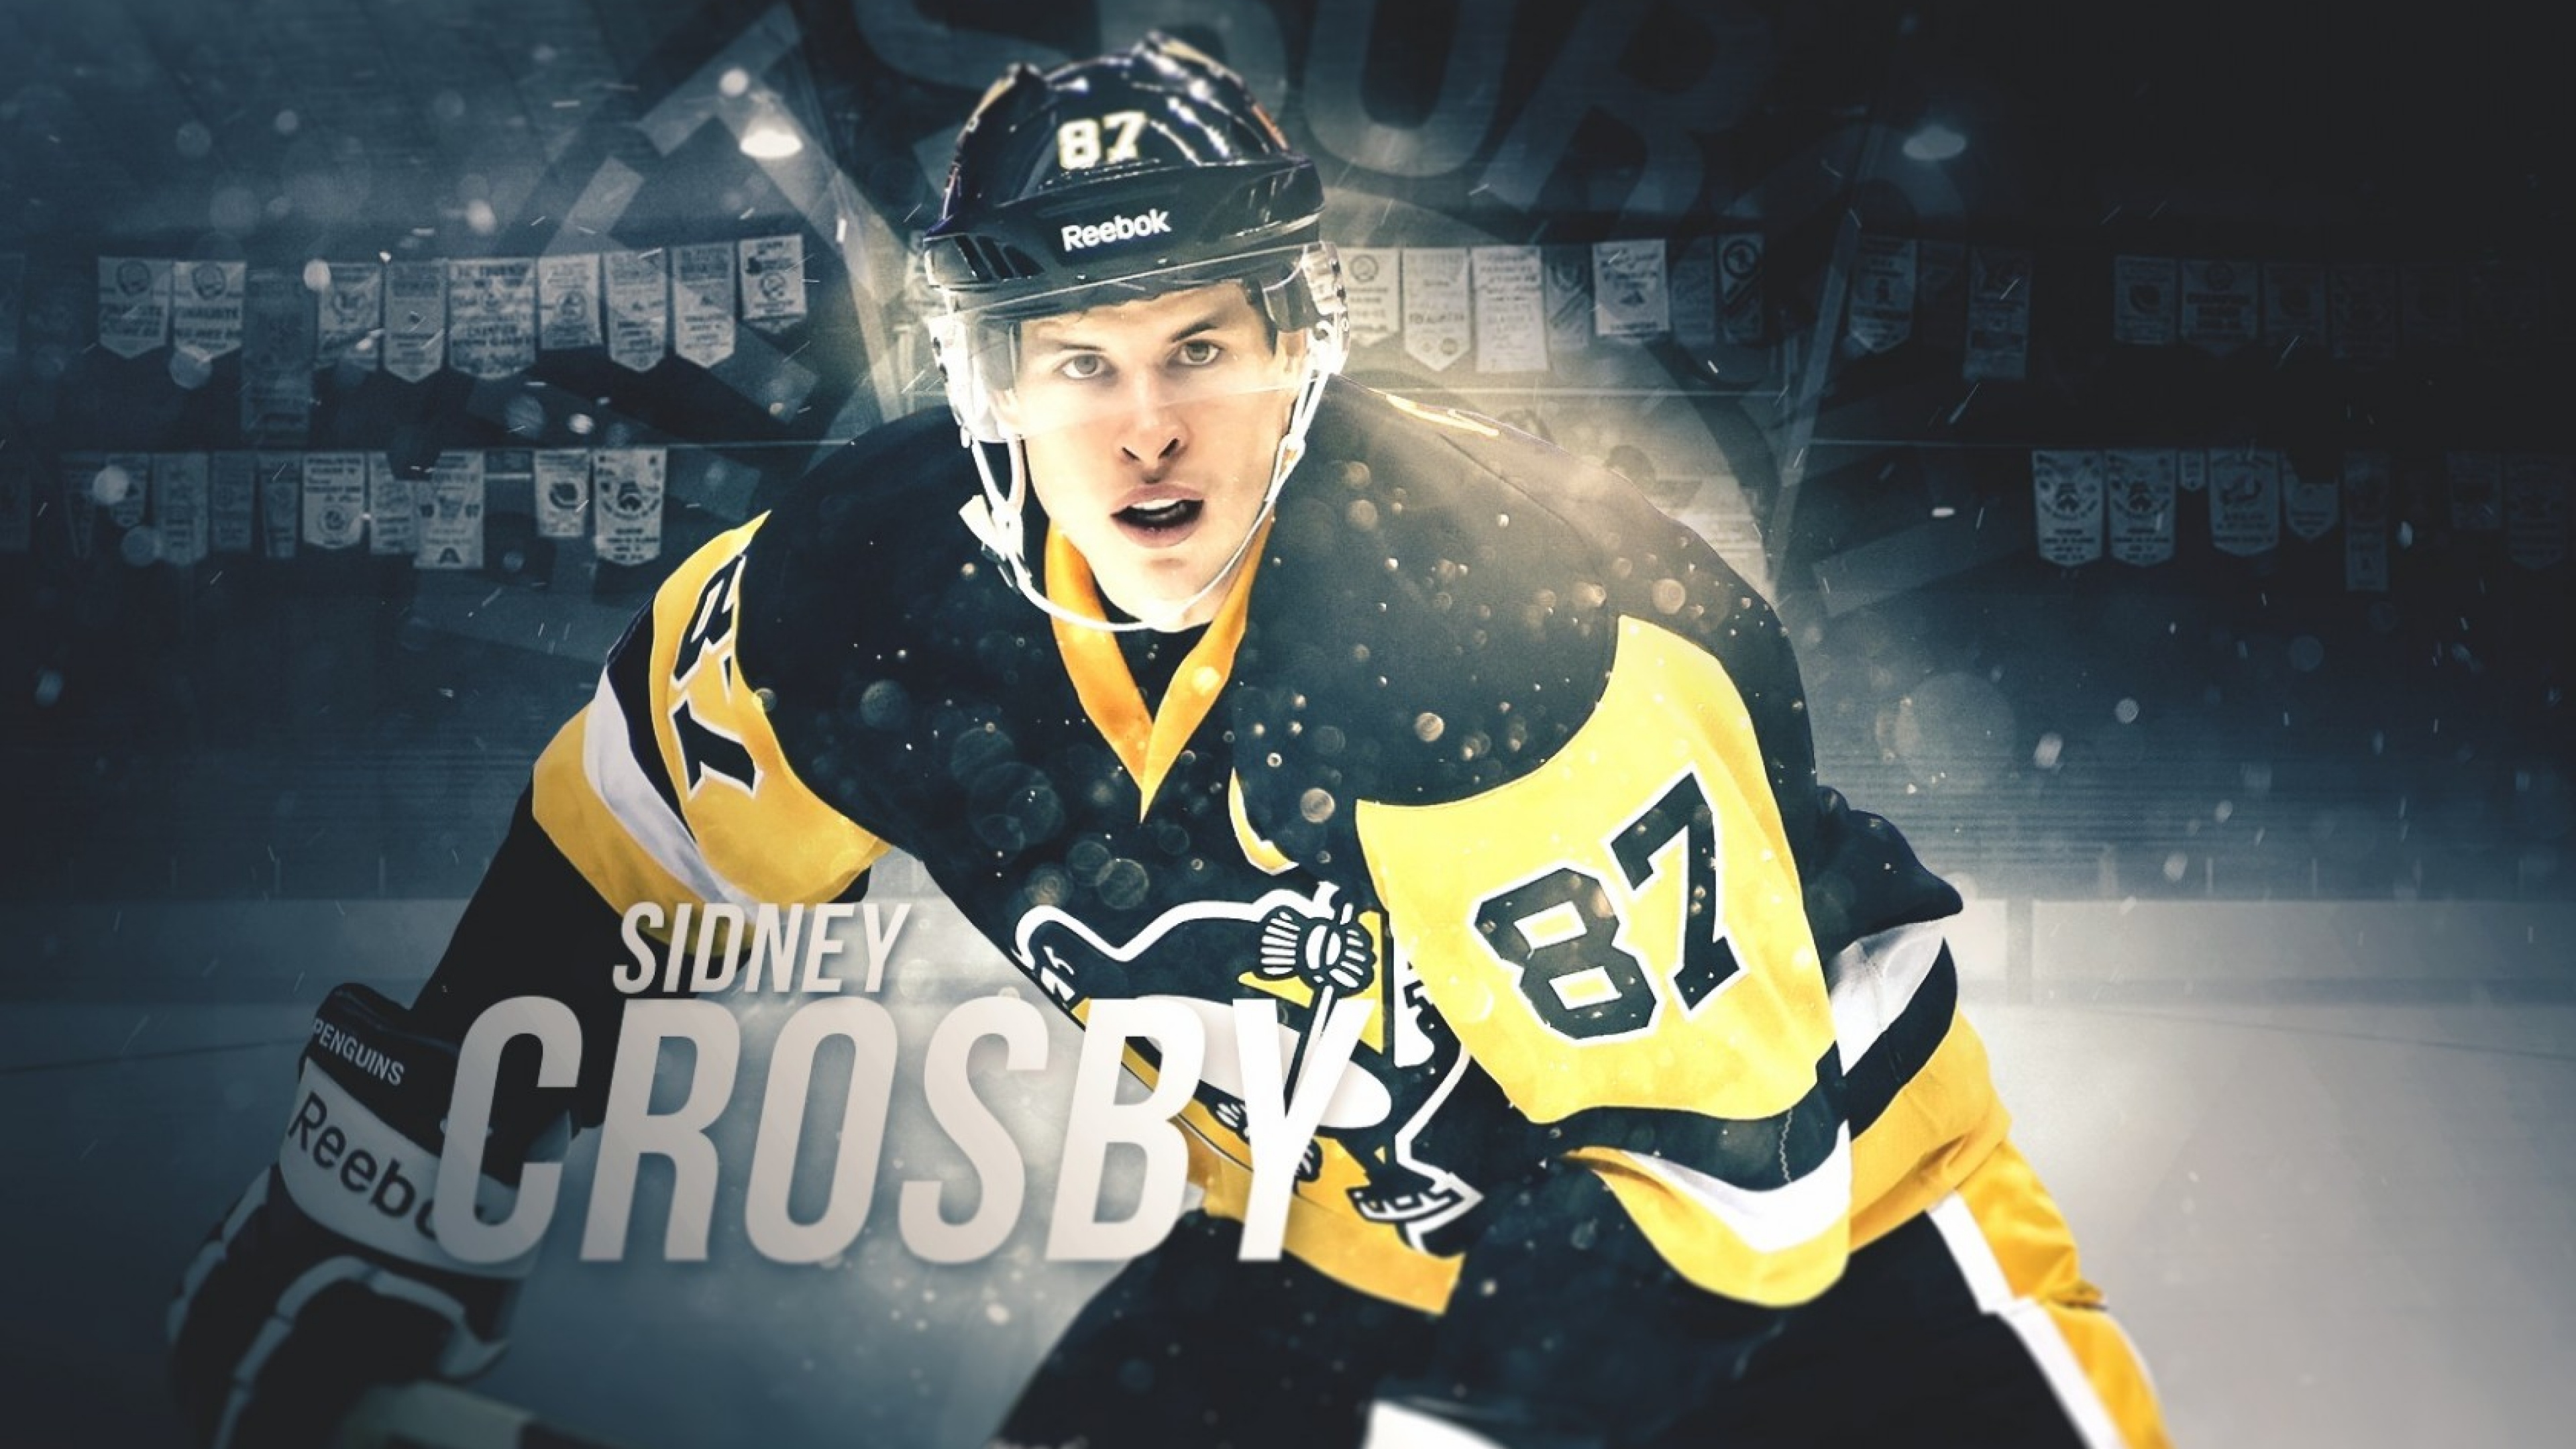 Sidney Crosby Wallpaper NHL Top 42 Sidney Crosby NHL